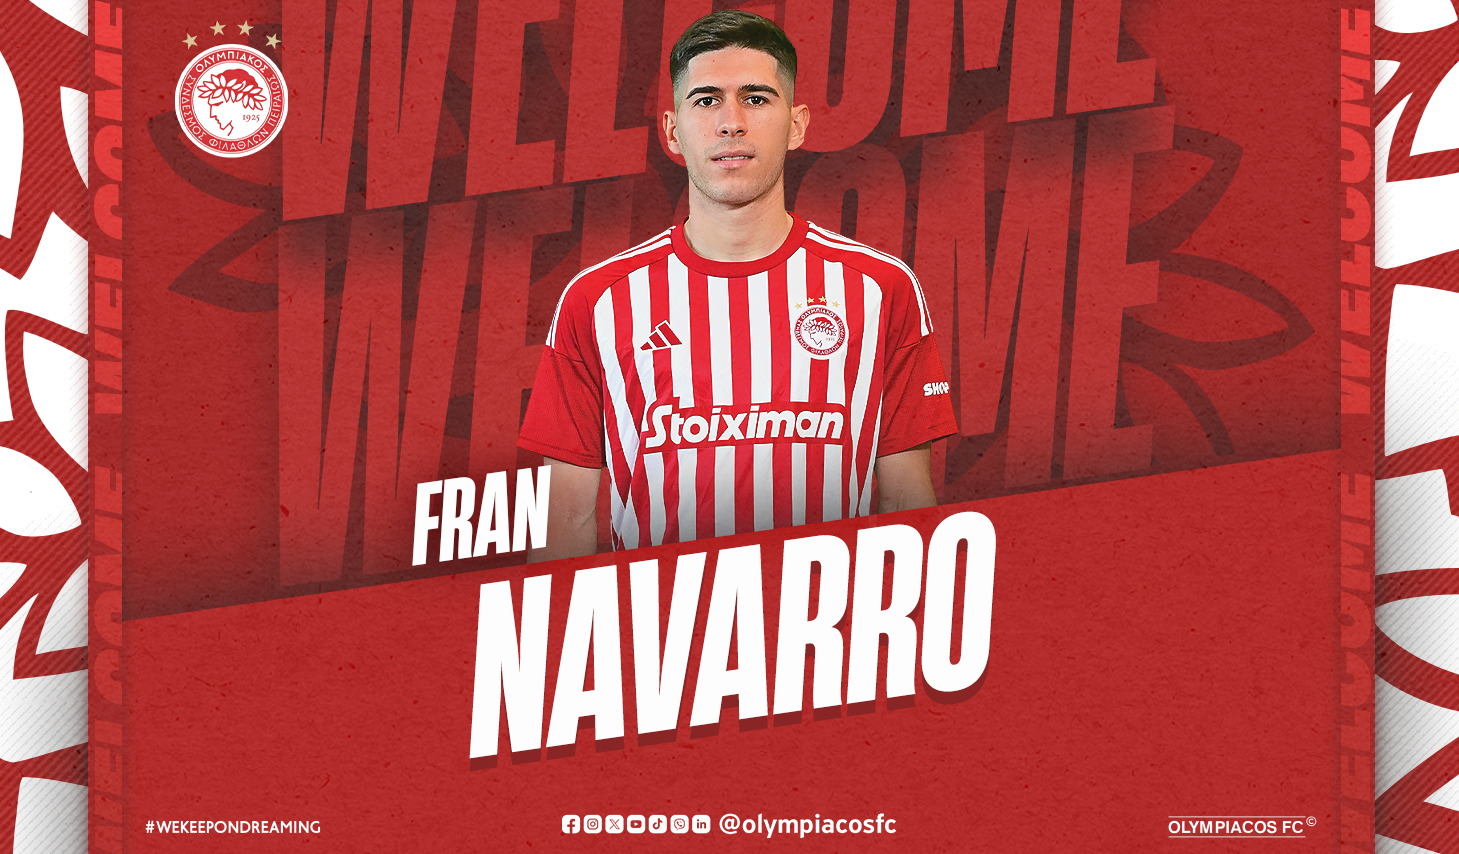 Fran Navarro joins Olympiacos